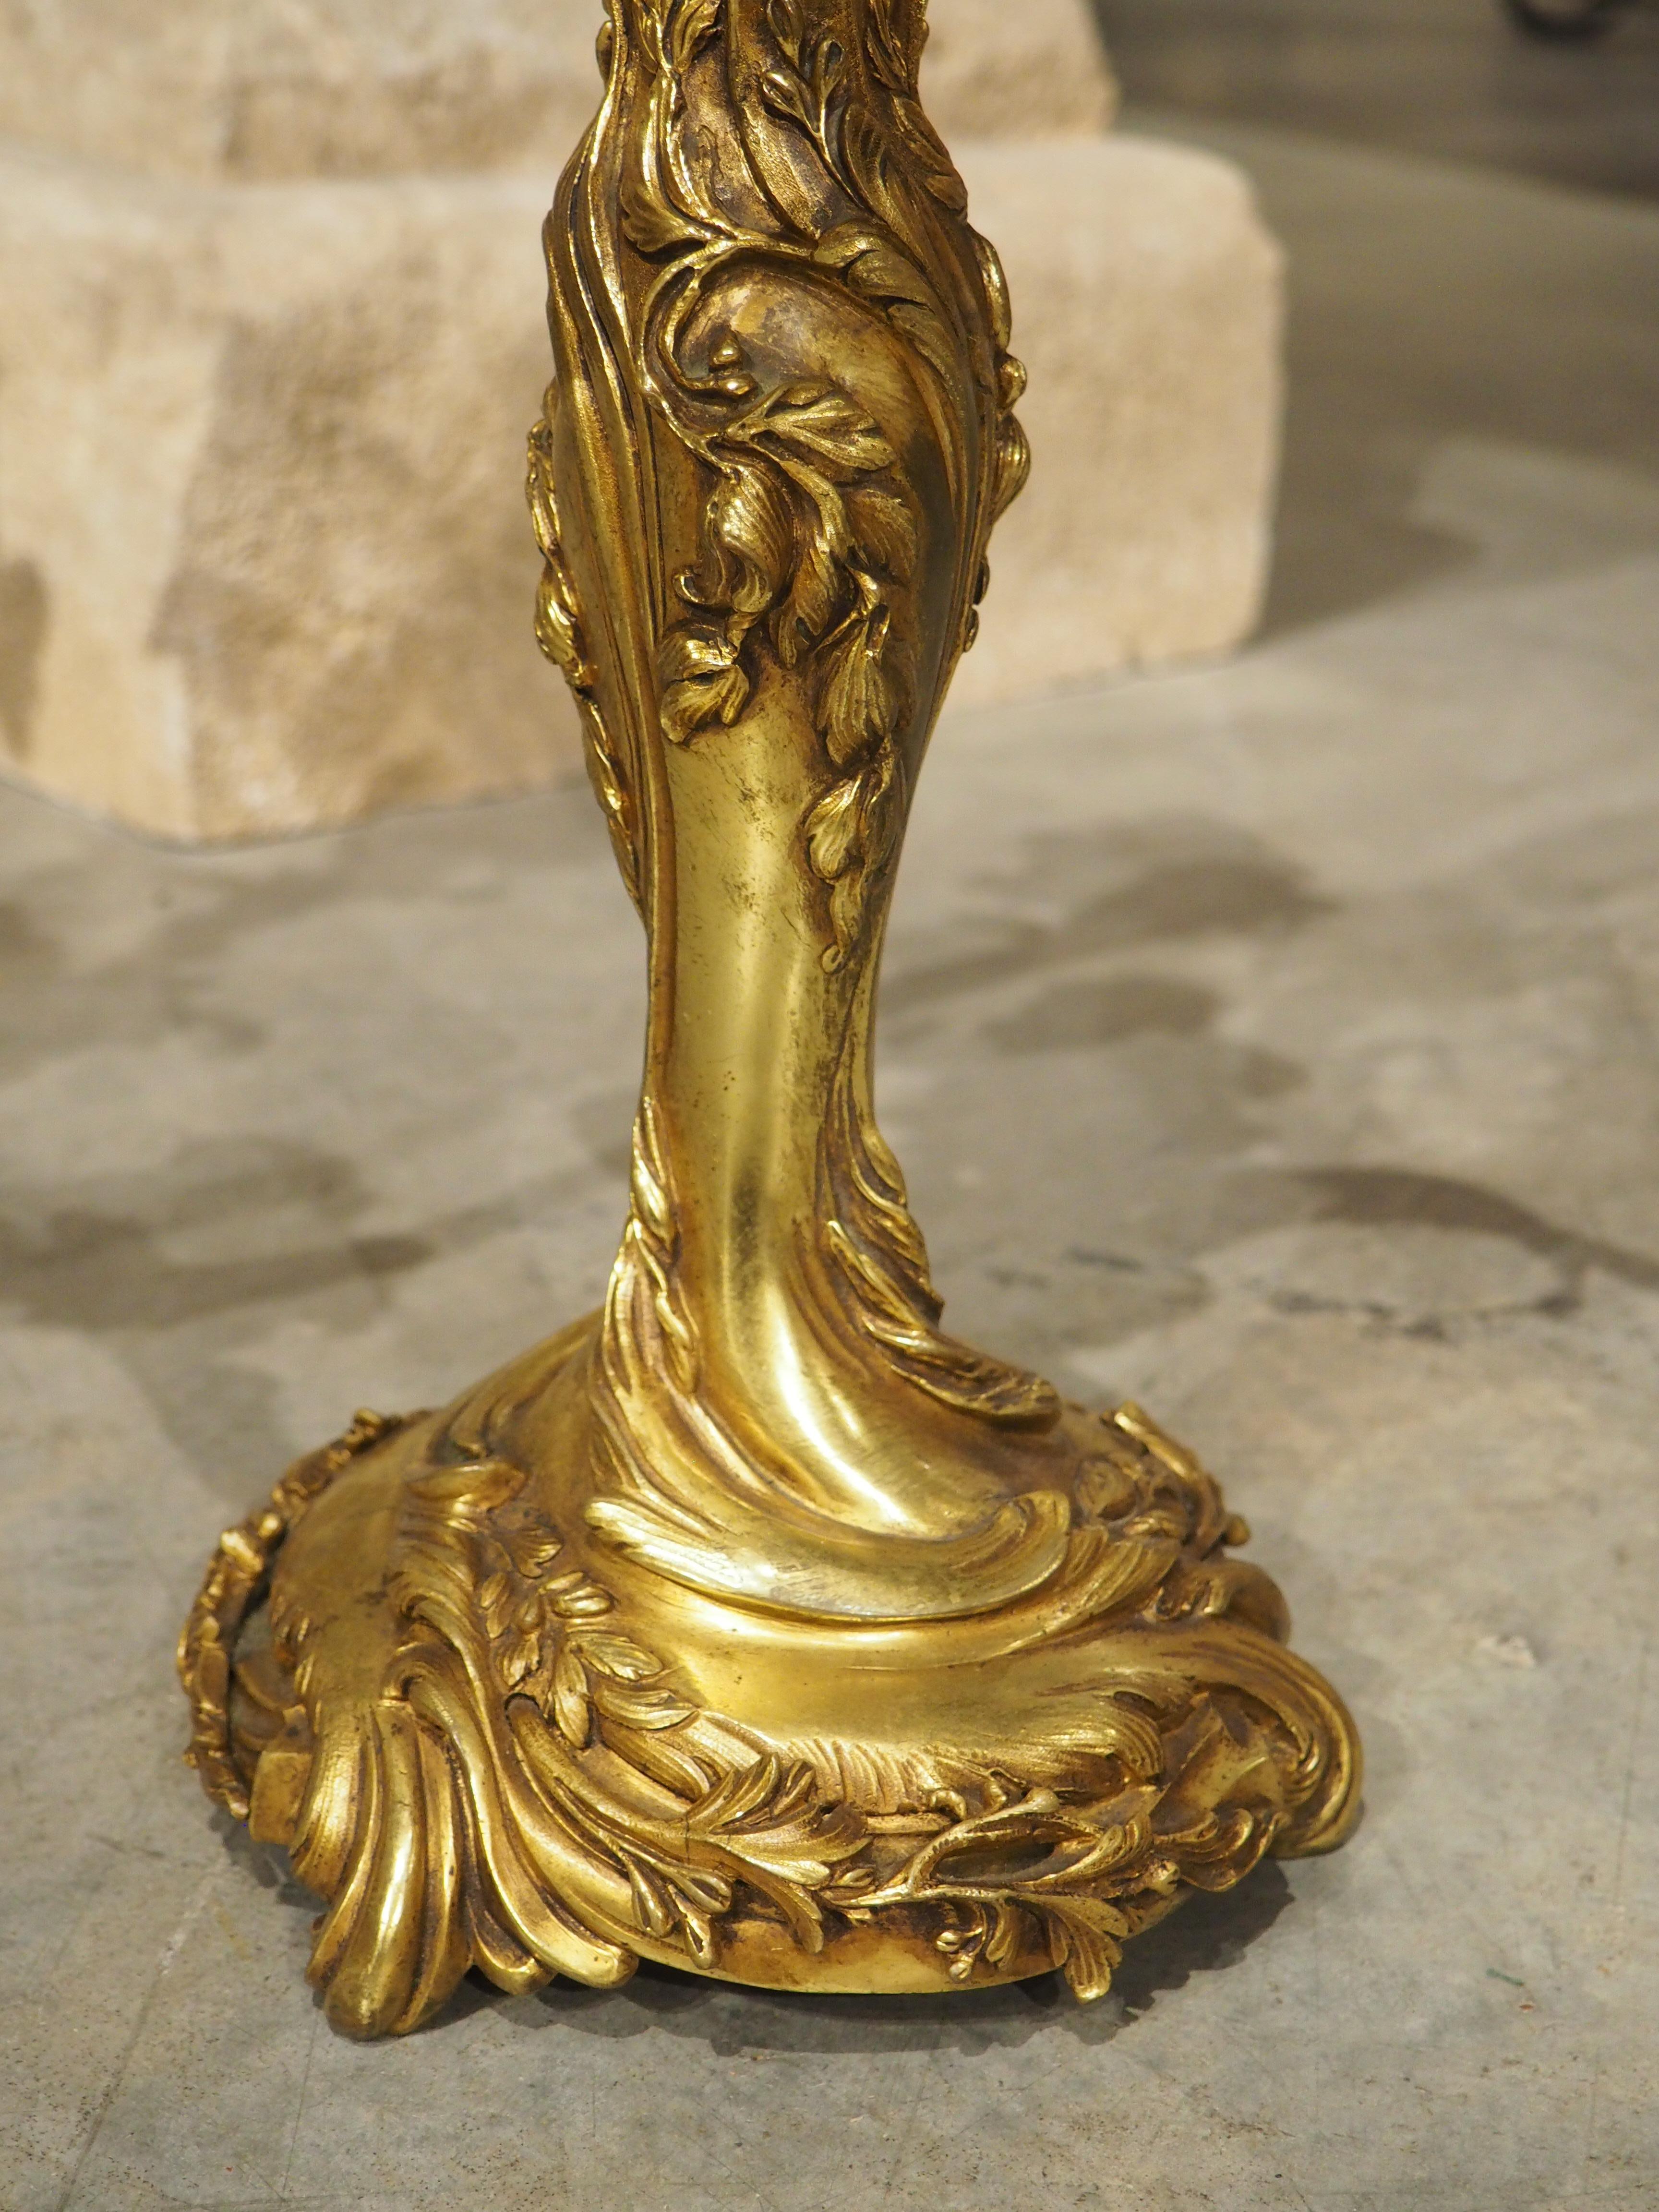 20th Century Pair of Belgian Gilt Bronze Candelabras by Georges Van de Voorde (1878-1970)